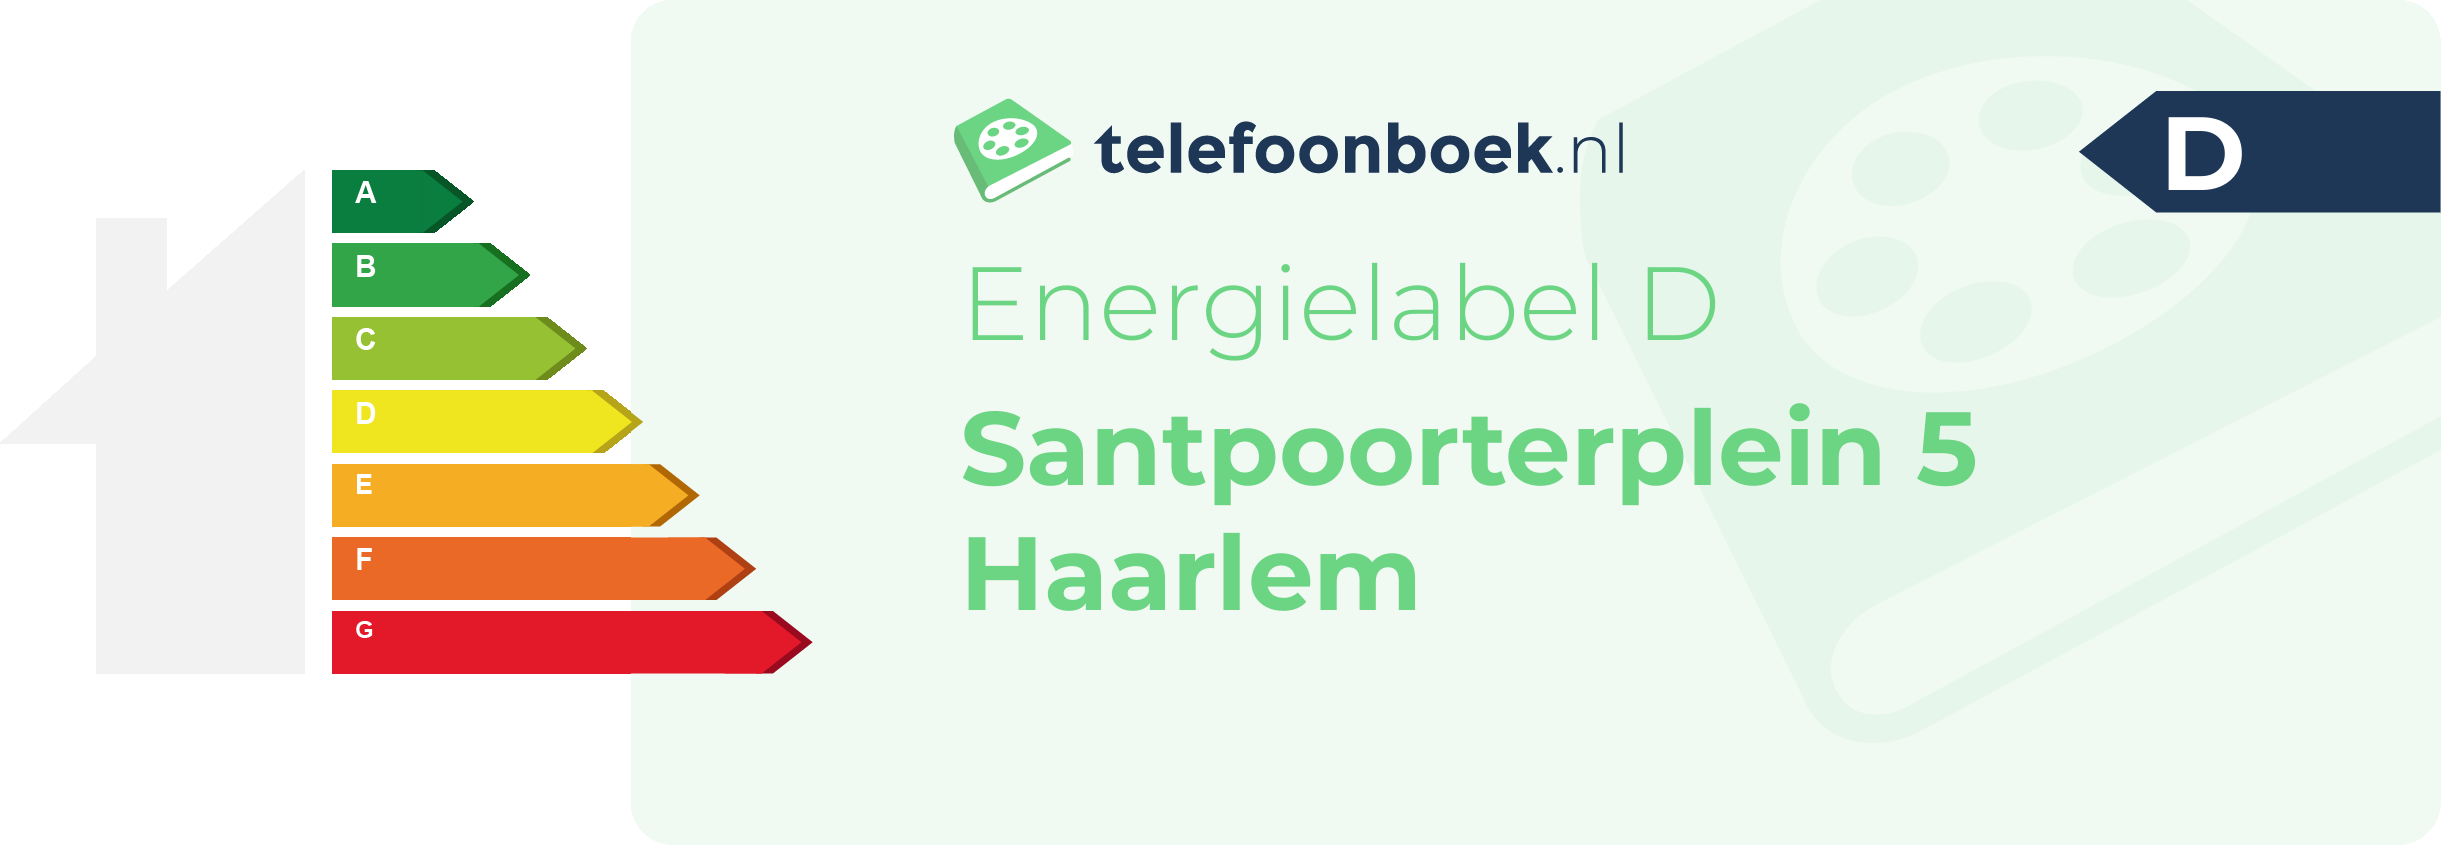 Energielabel Santpoorterplein 5 Haarlem